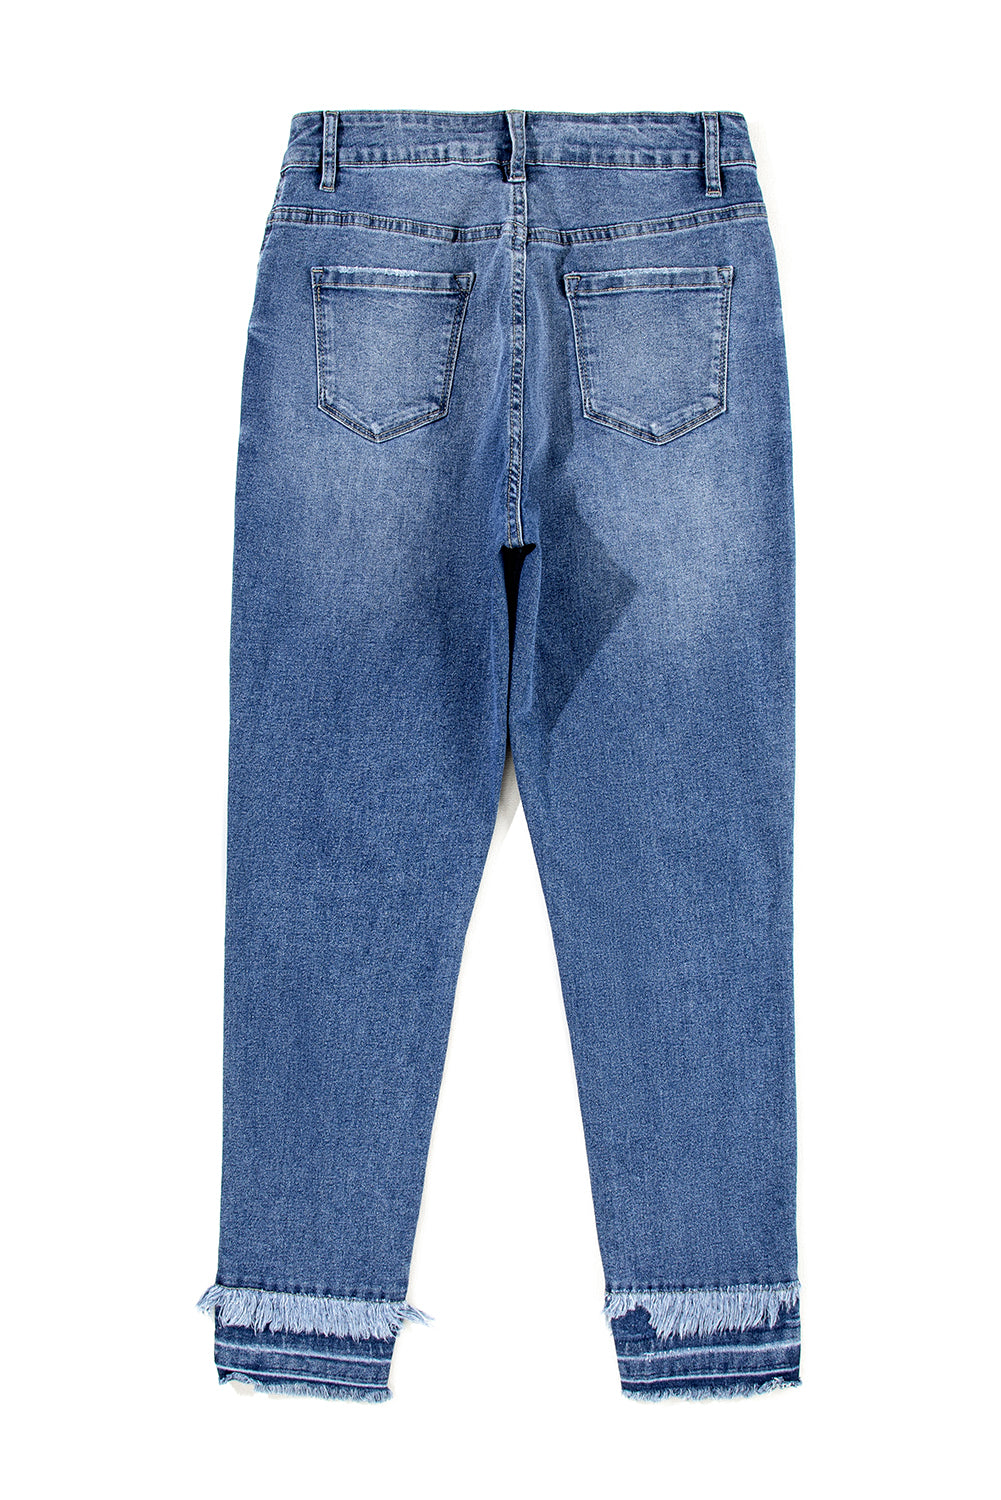 Hellblaue, ausgefranste Skinny-Jeans im Used-Look